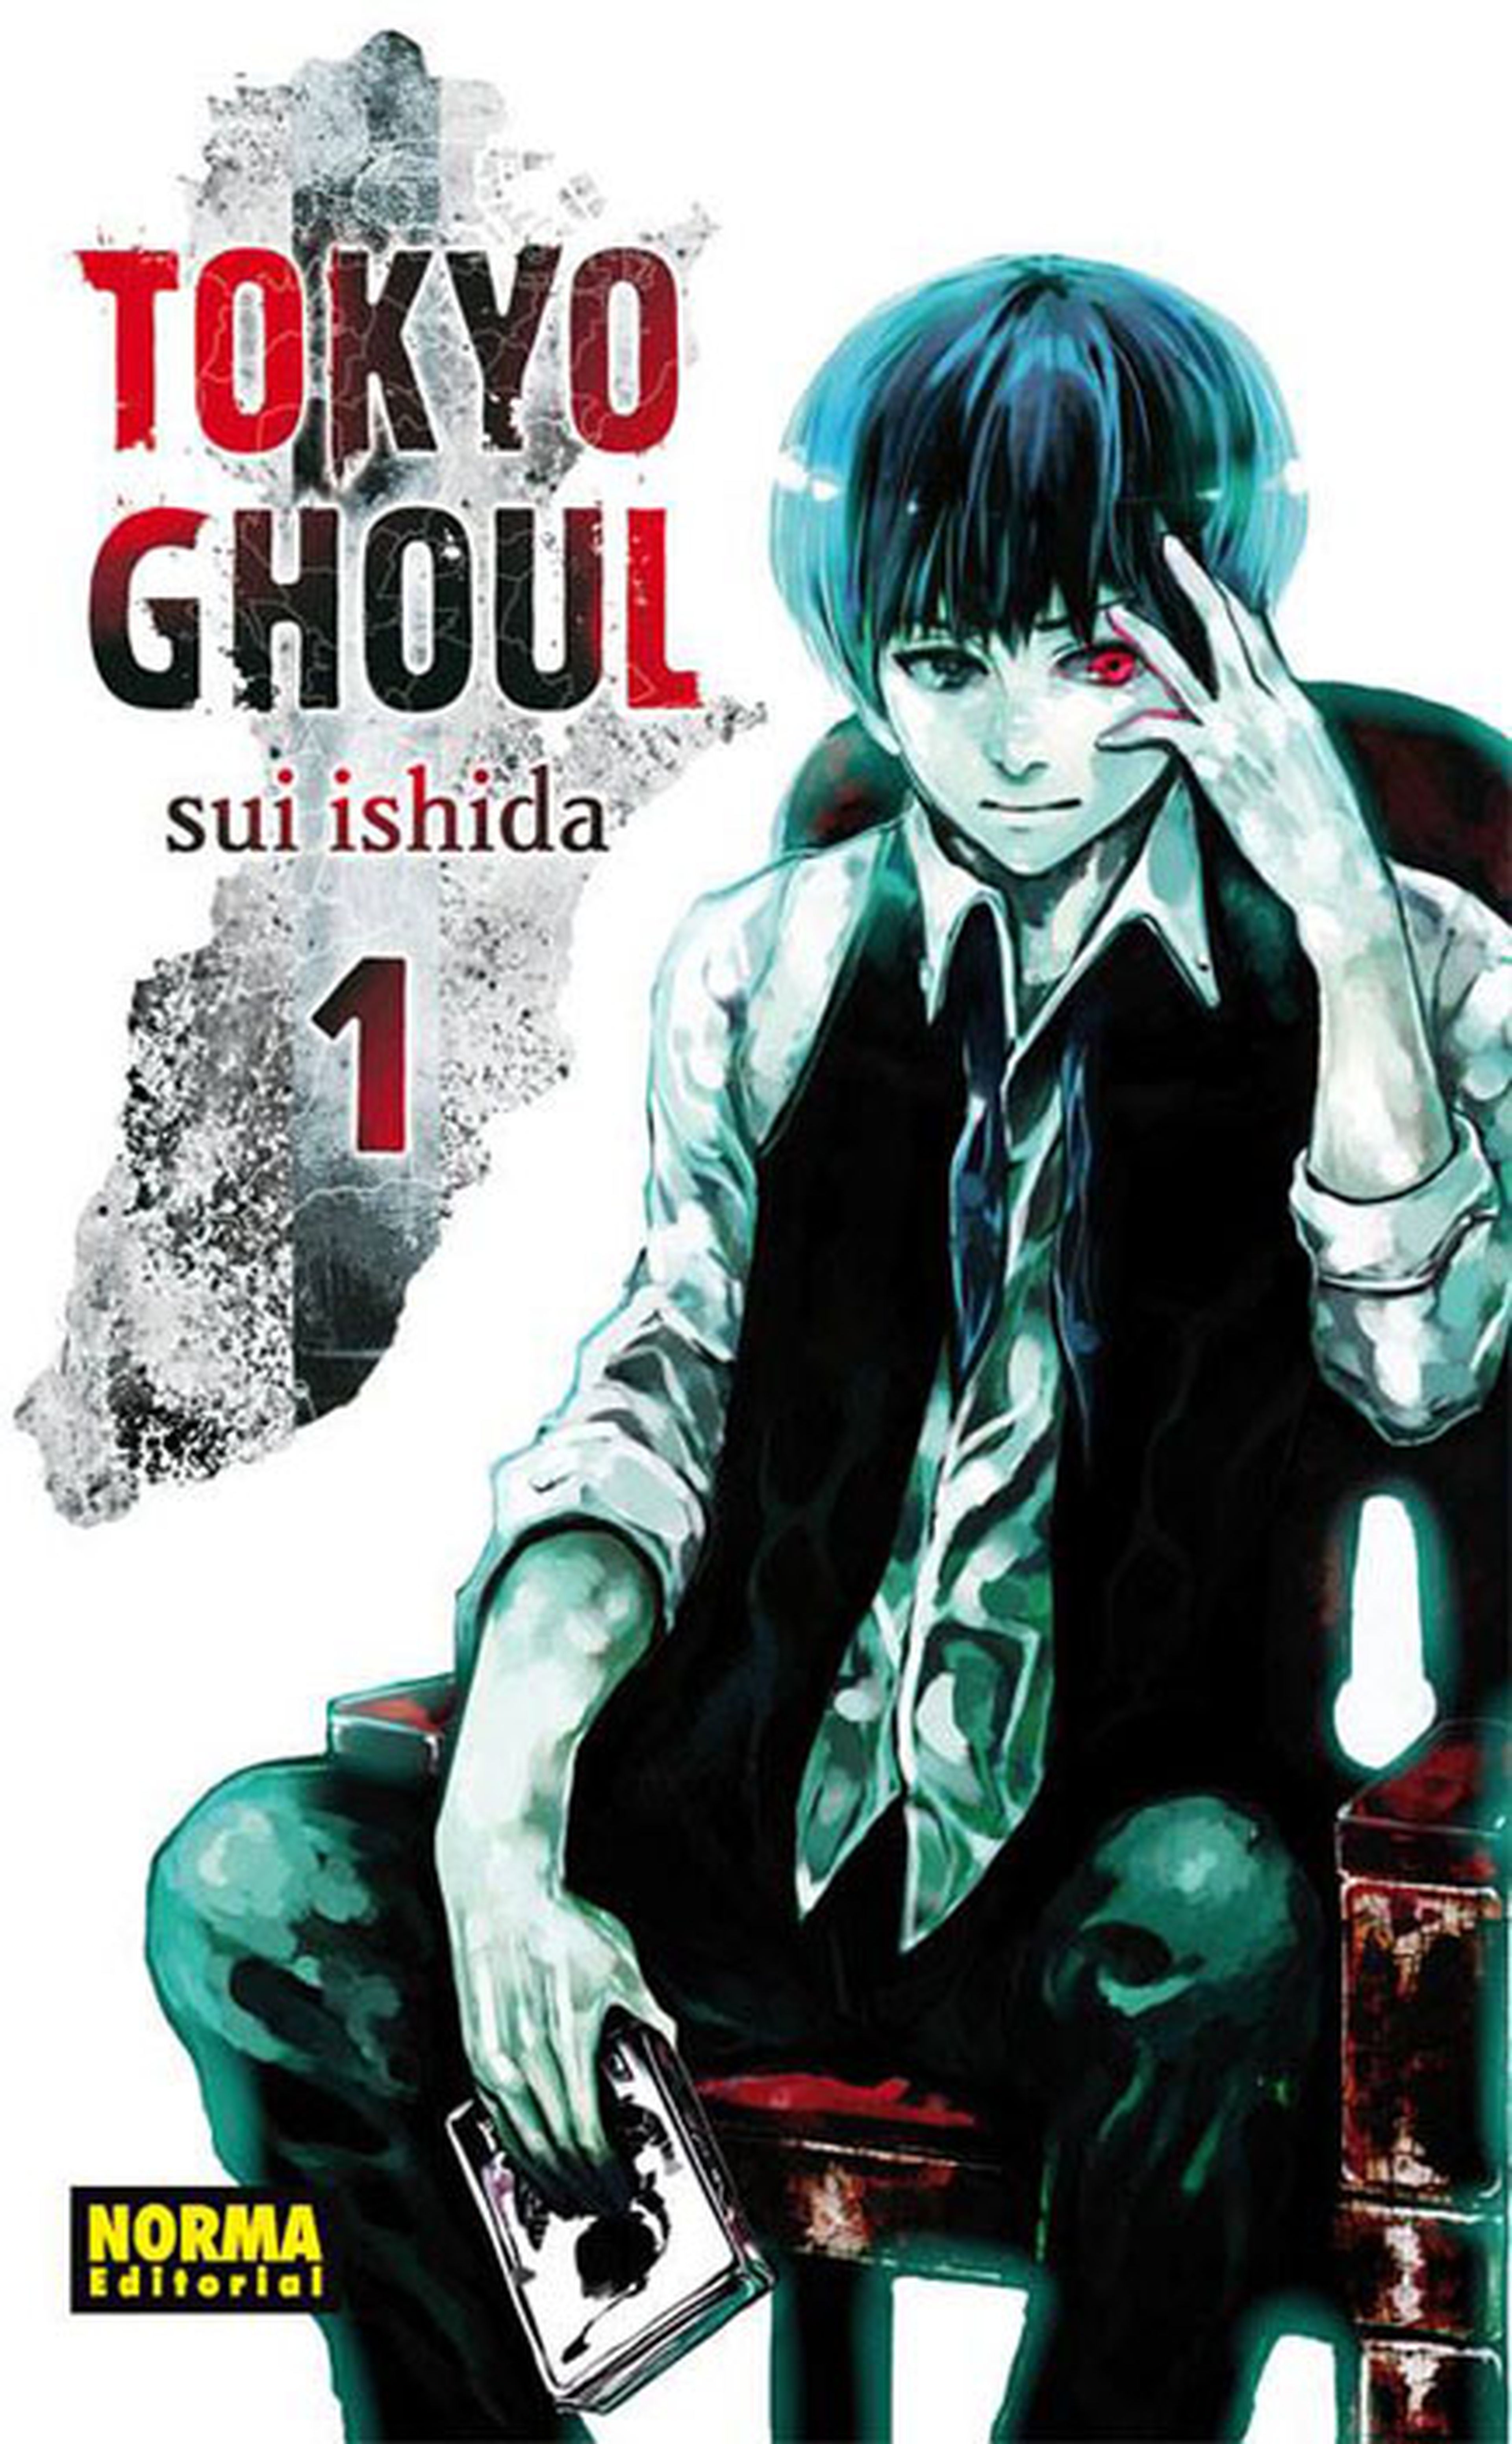 Tokyo Ghoul ya tiene portada en castellano